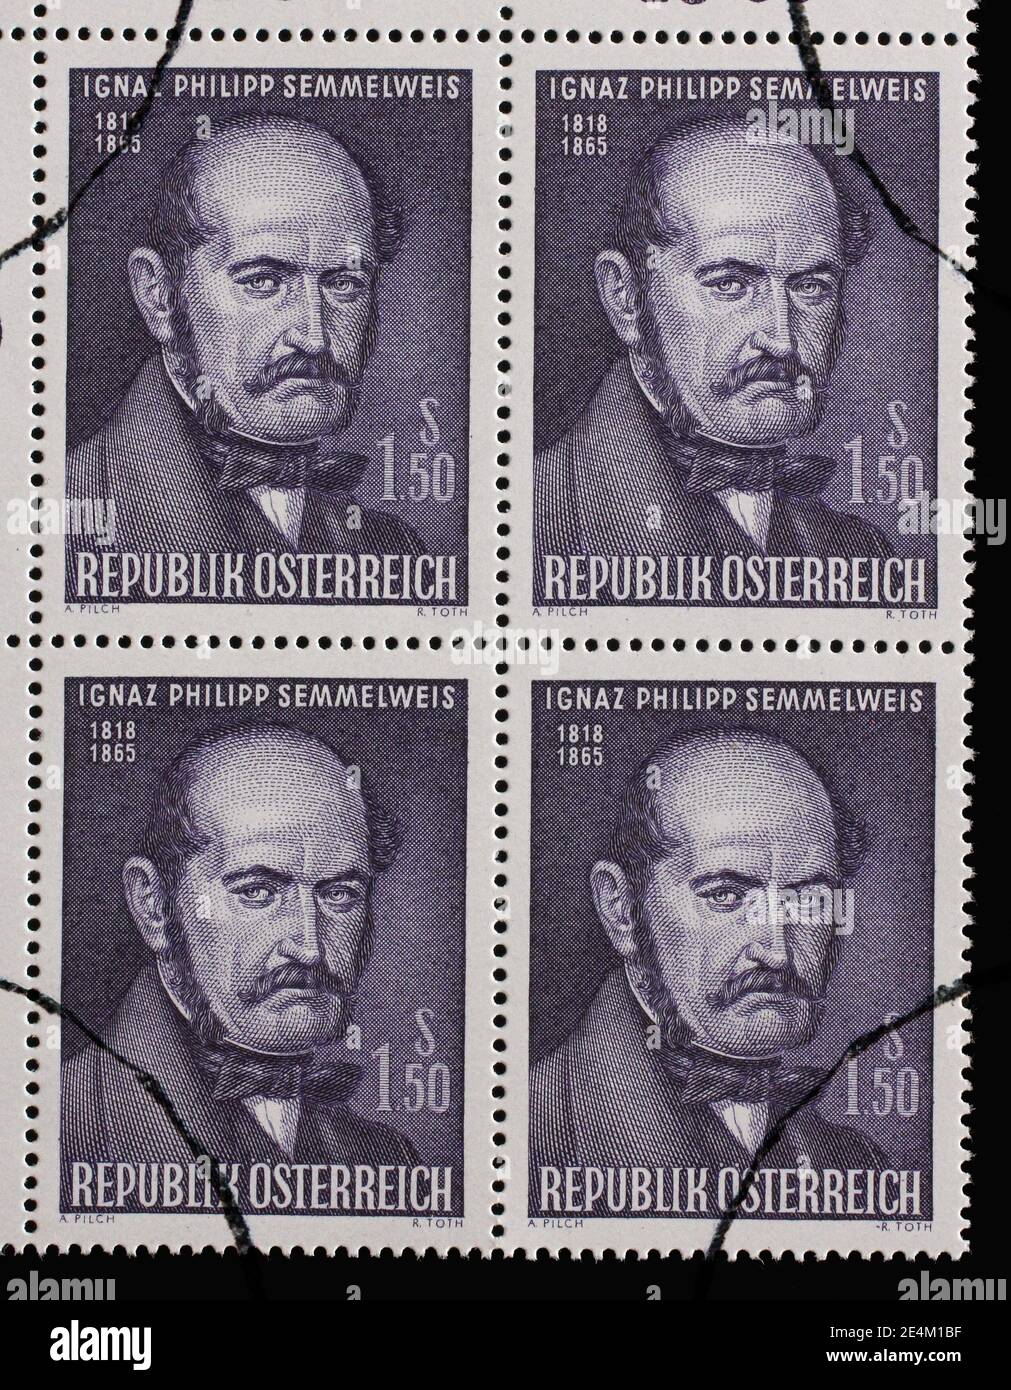 Timbre émis en Autriche montre Ignaz Philipp Semmelweis - médecin hongrois, maintenant connu comme un pionnier des procédures antiseptiques, vers 1965 Banque D'Images